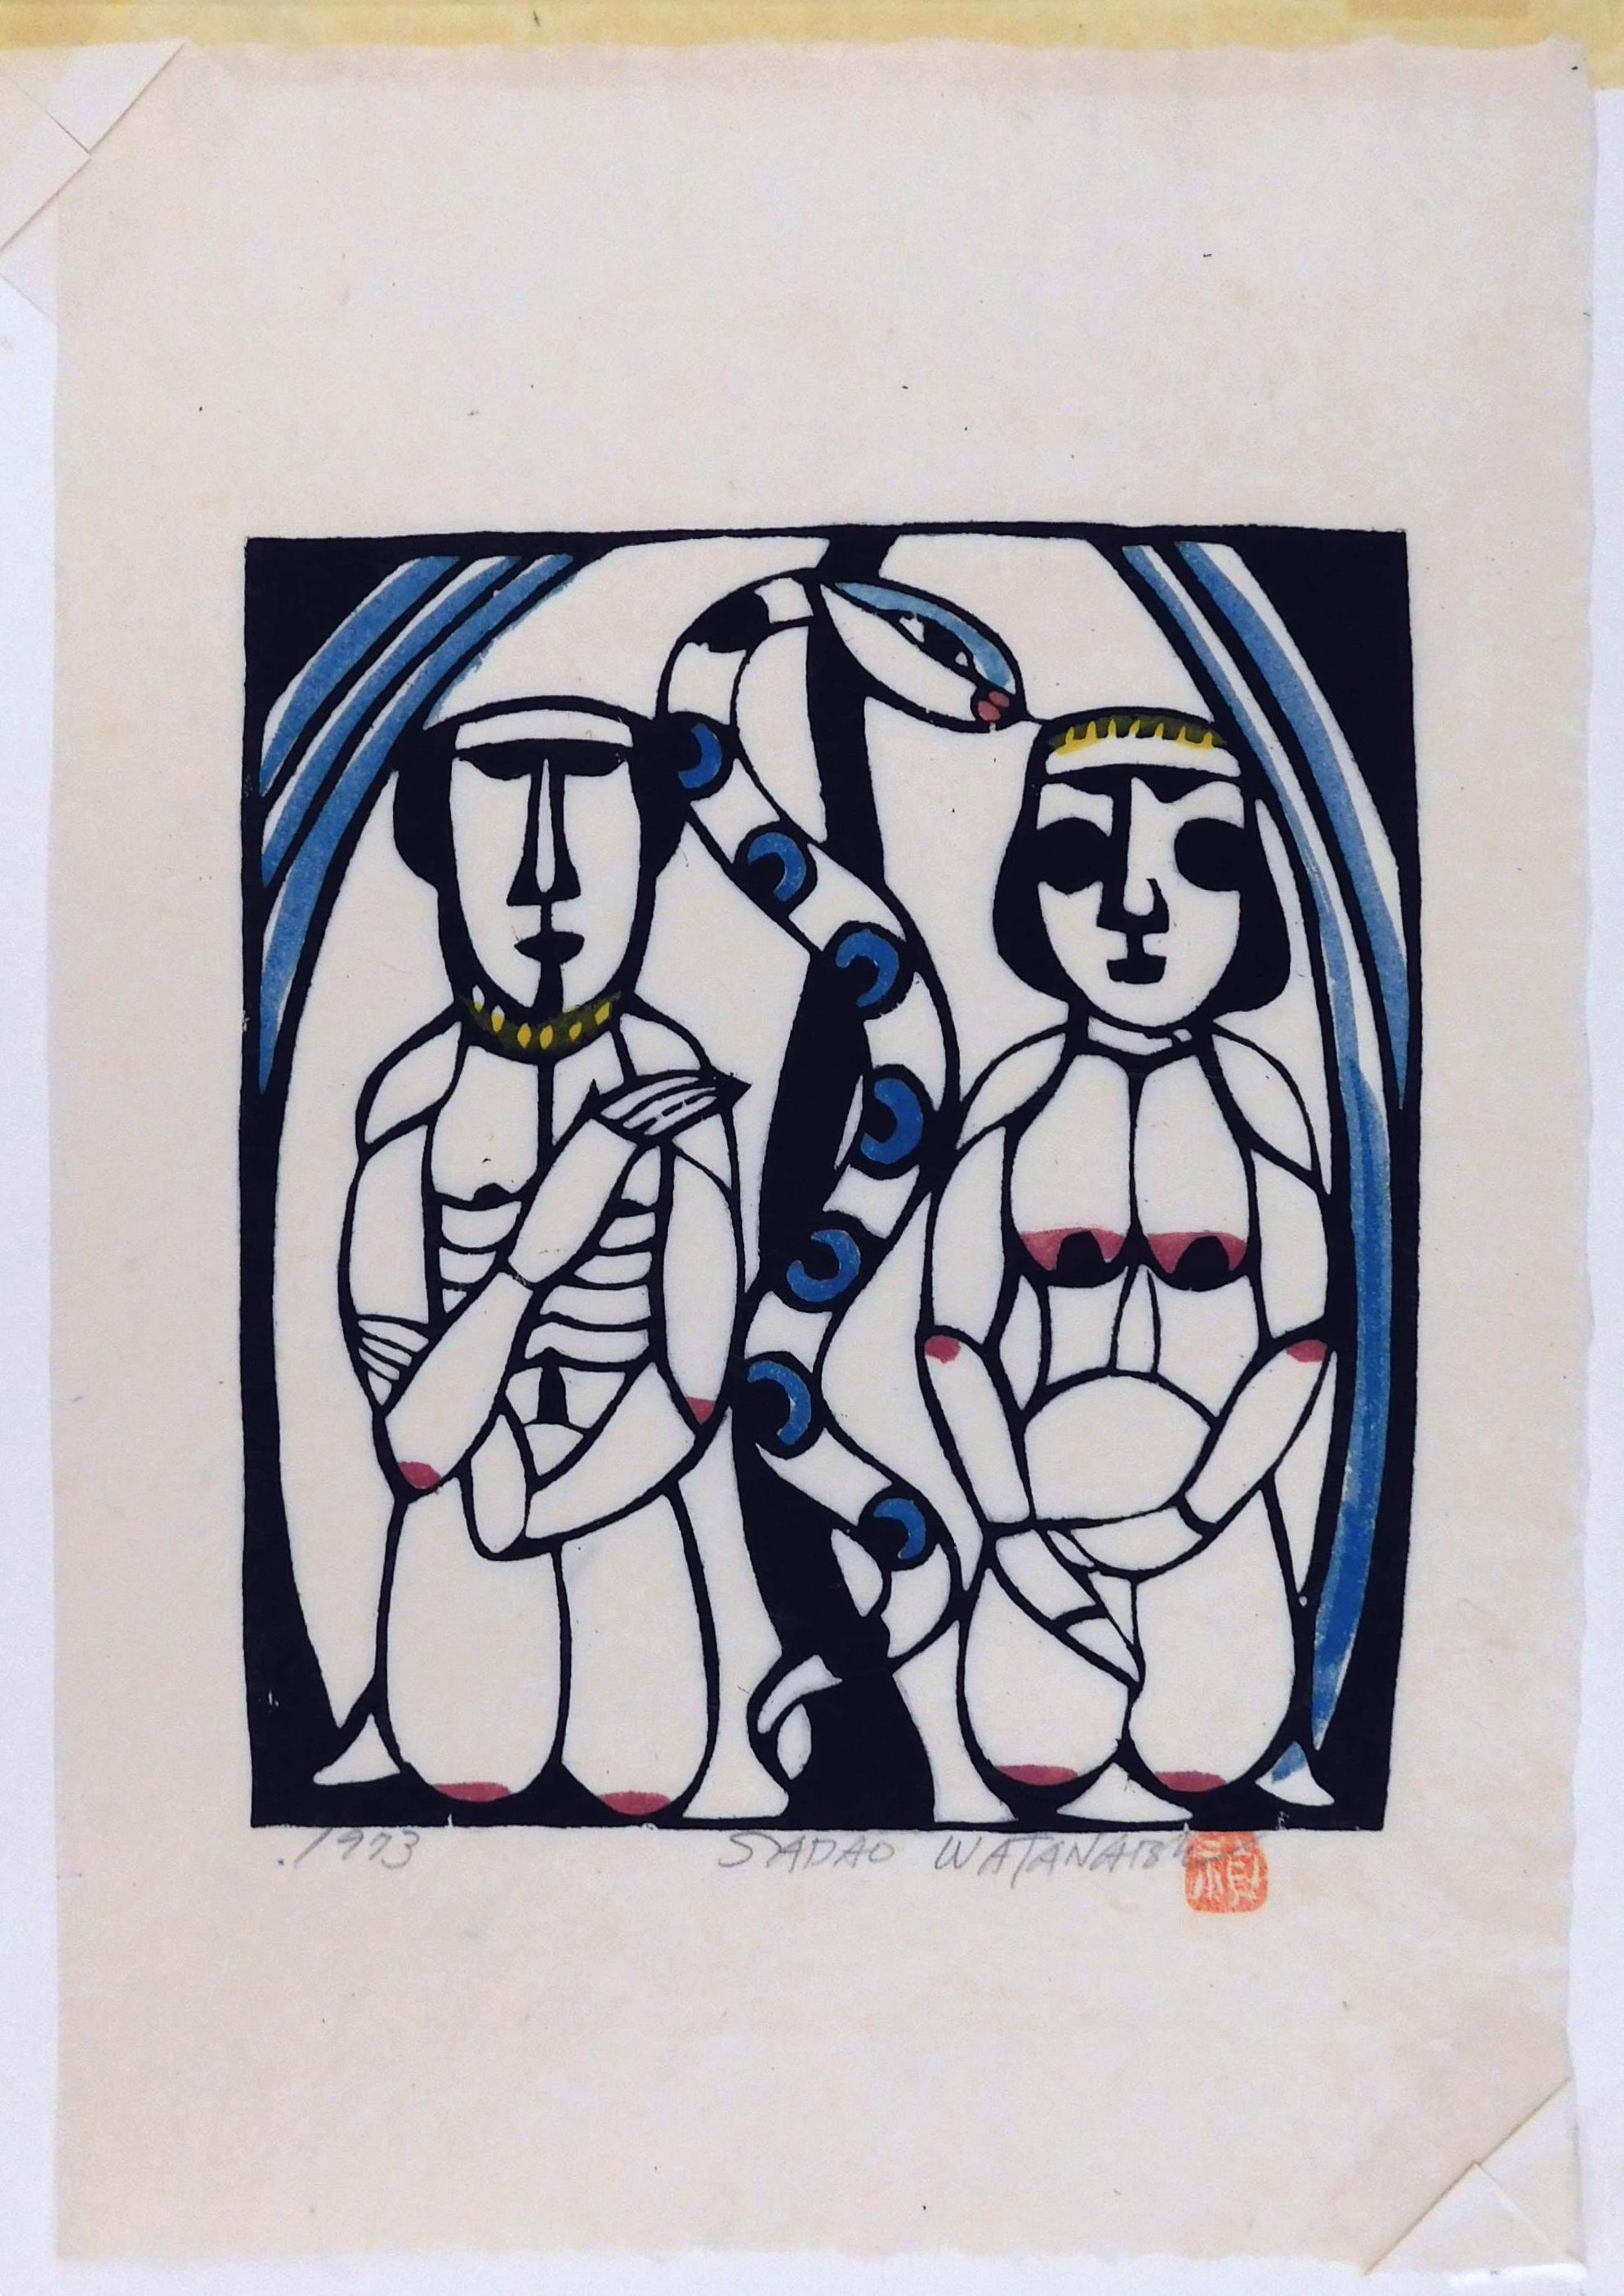 Impression au pochoir de Sadao Watanabe, coloriée à la main sur du papier washi fait à la main.
Cette image représente Adams et Eve avec le serpent dans le jardin de  L'Eden de la Genèse.
La marque de l'artiste et la signature au crayon sont